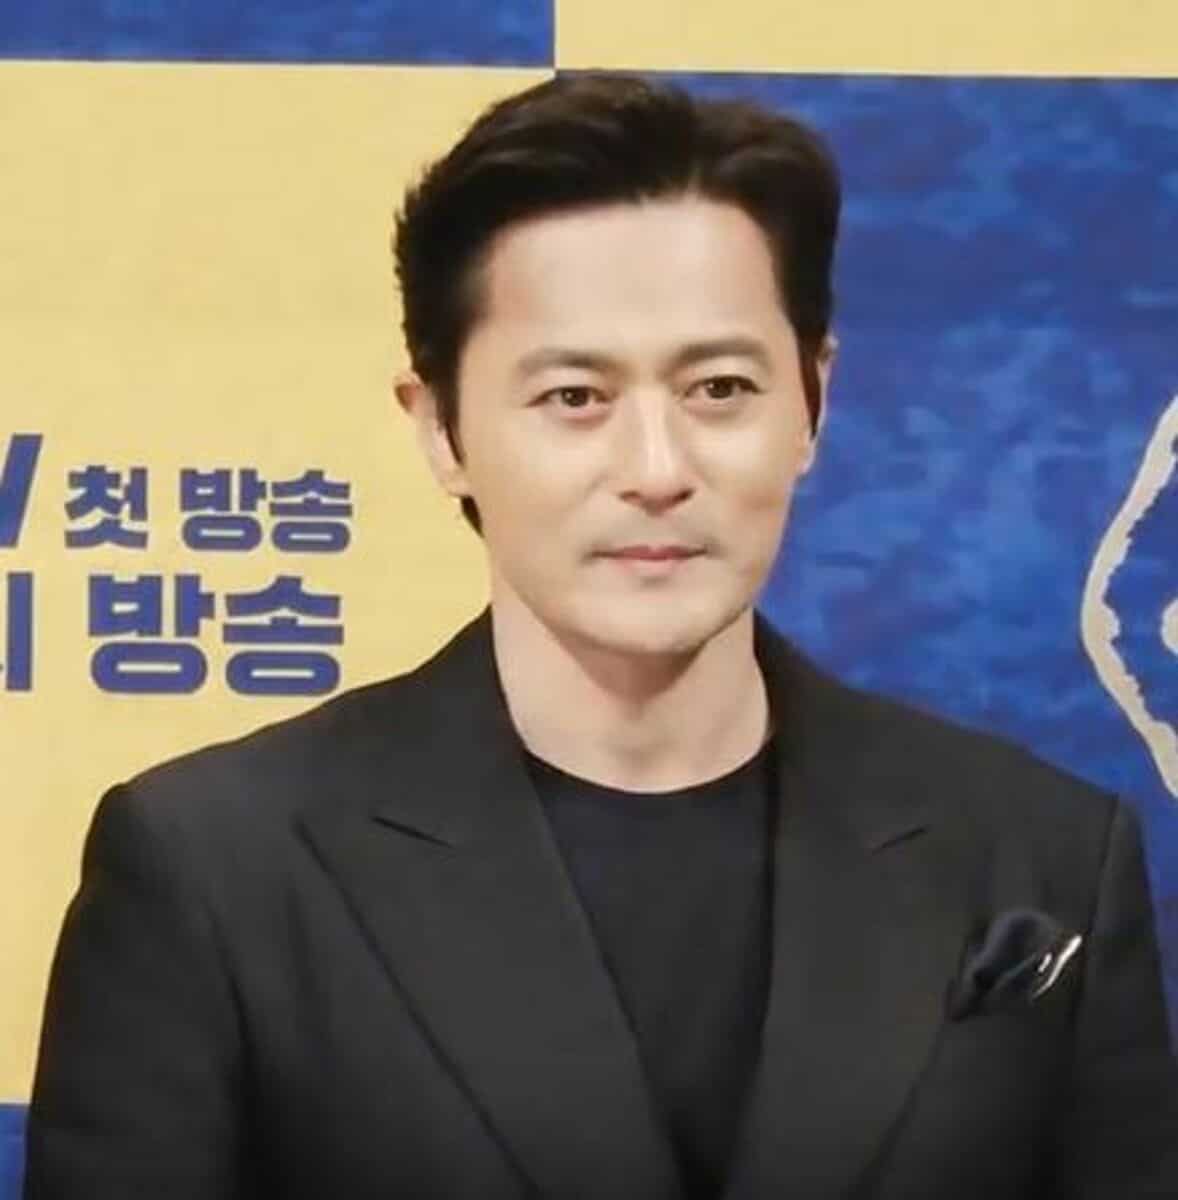 Jang Dong-gun - Famous Actor